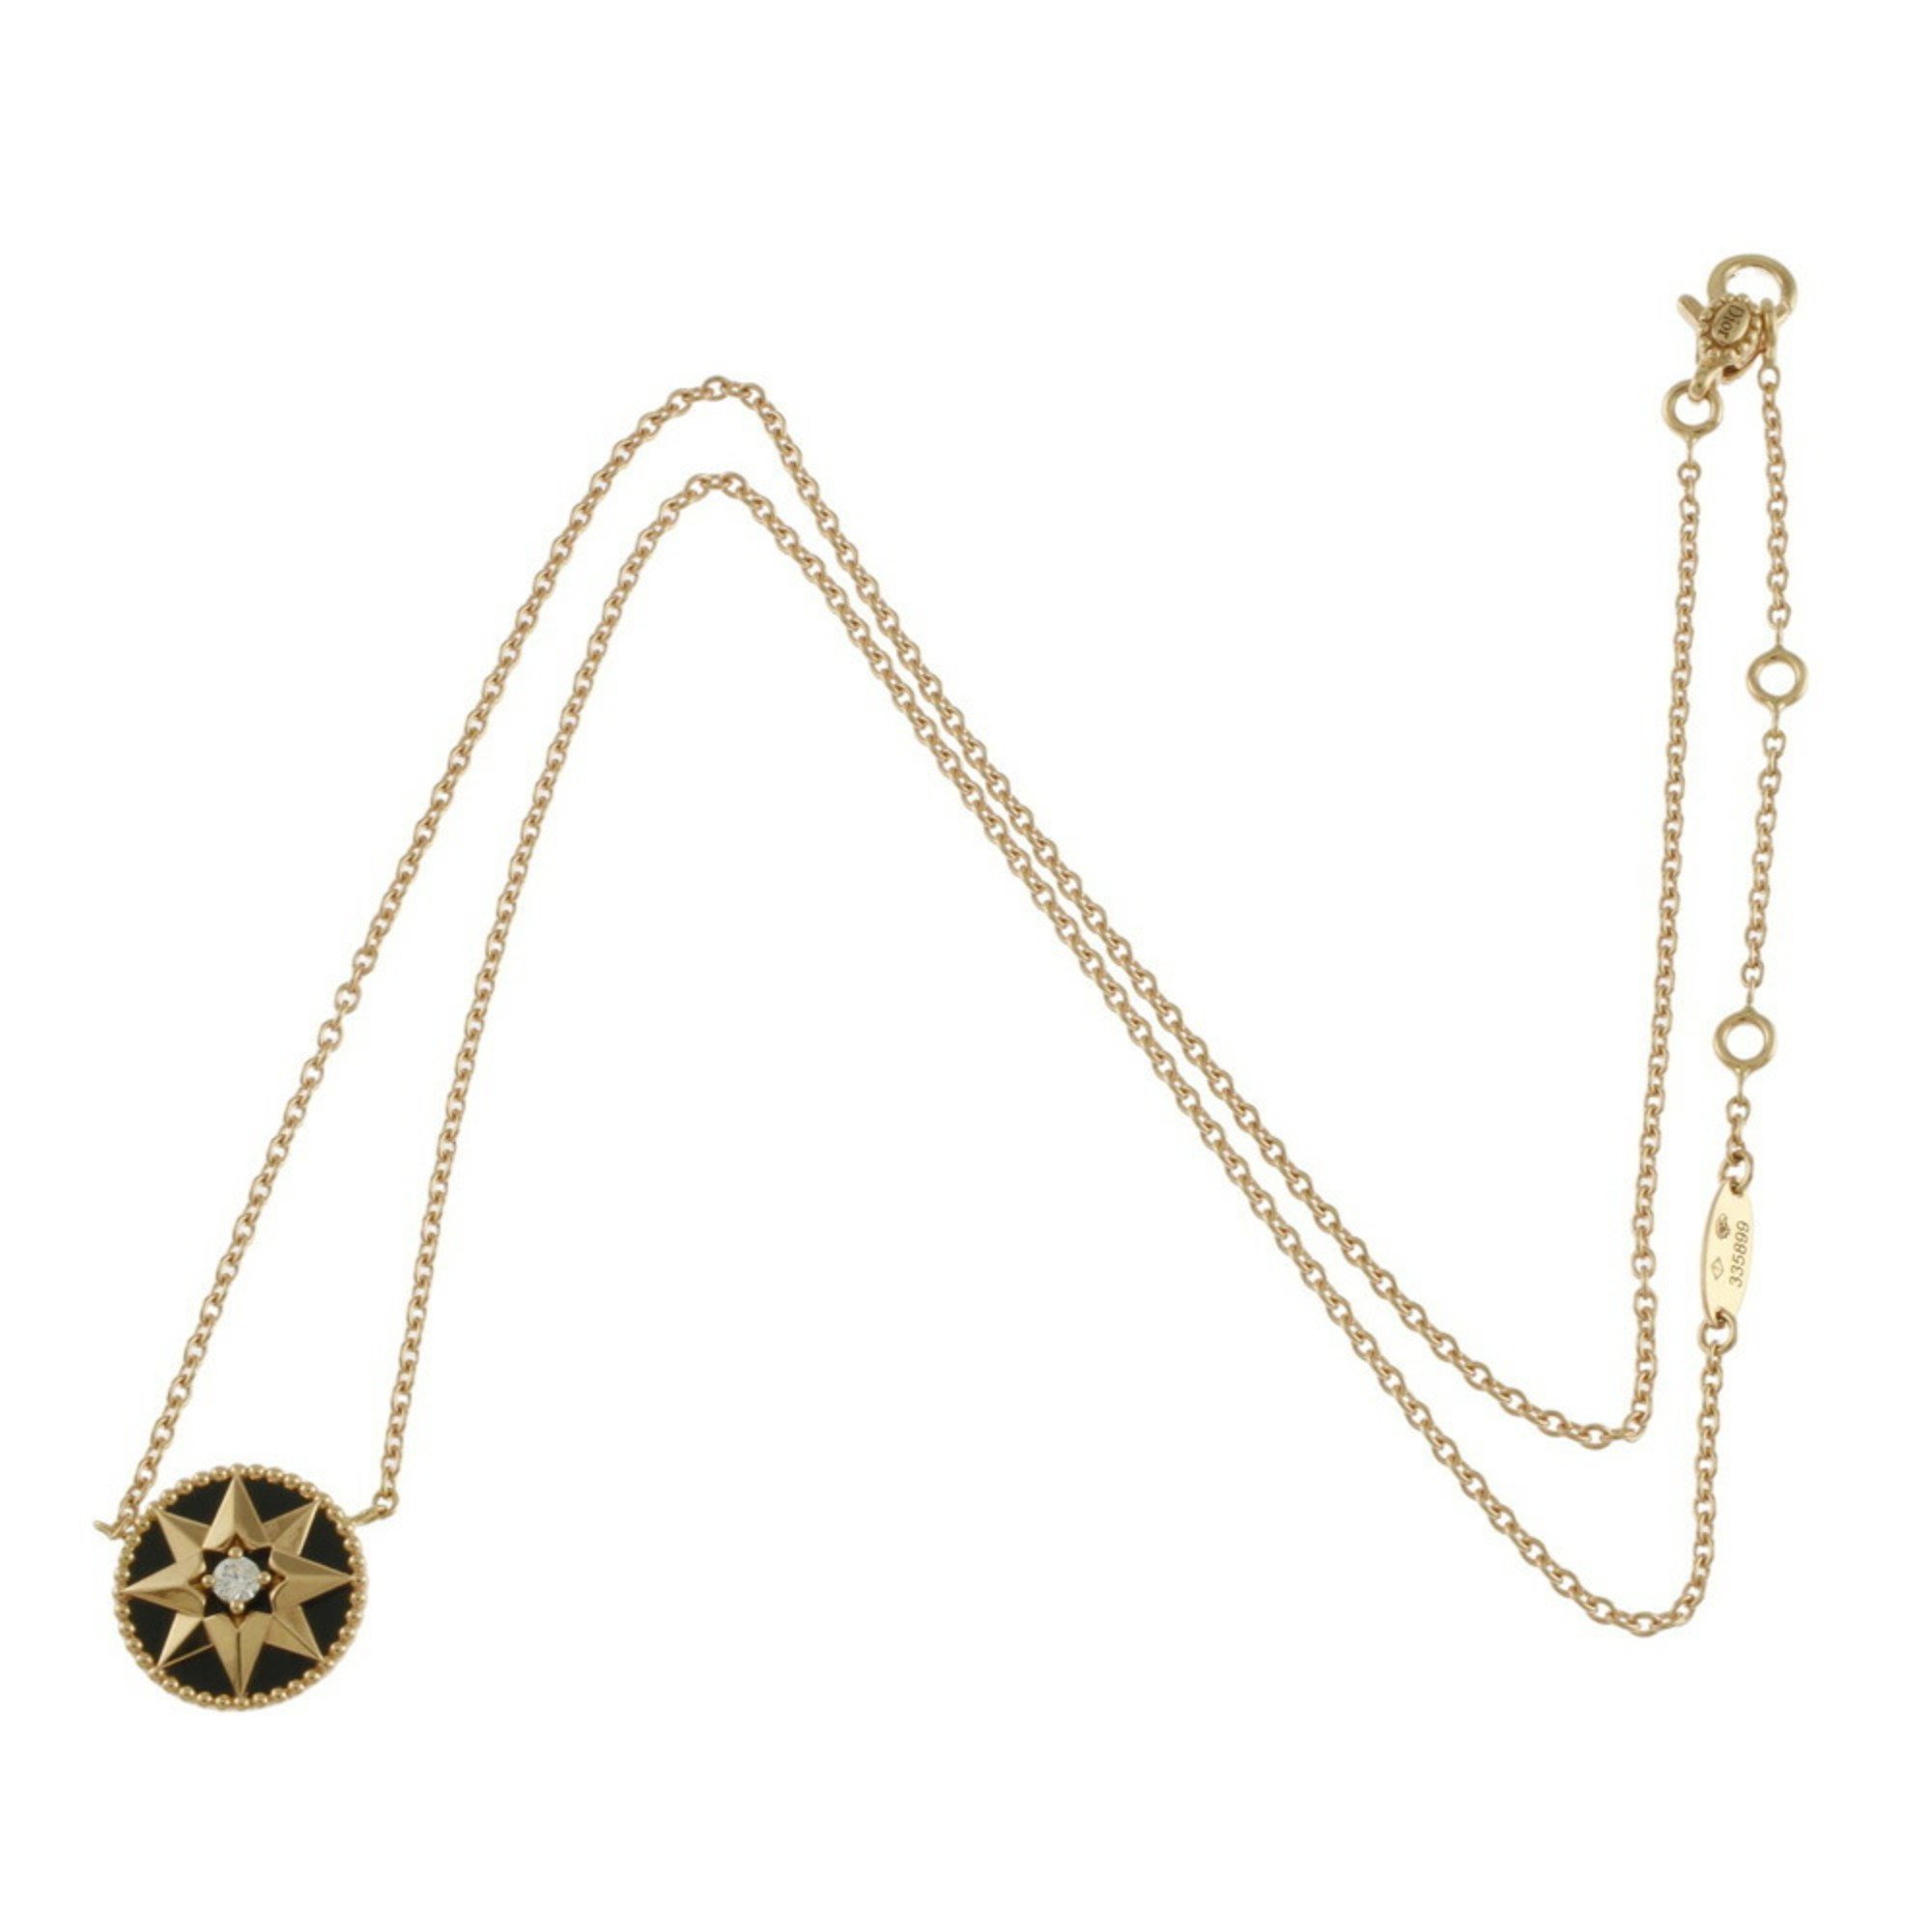 Christian Dior Necklace 18K Onyx Diamond Women's BRJ10000000124947